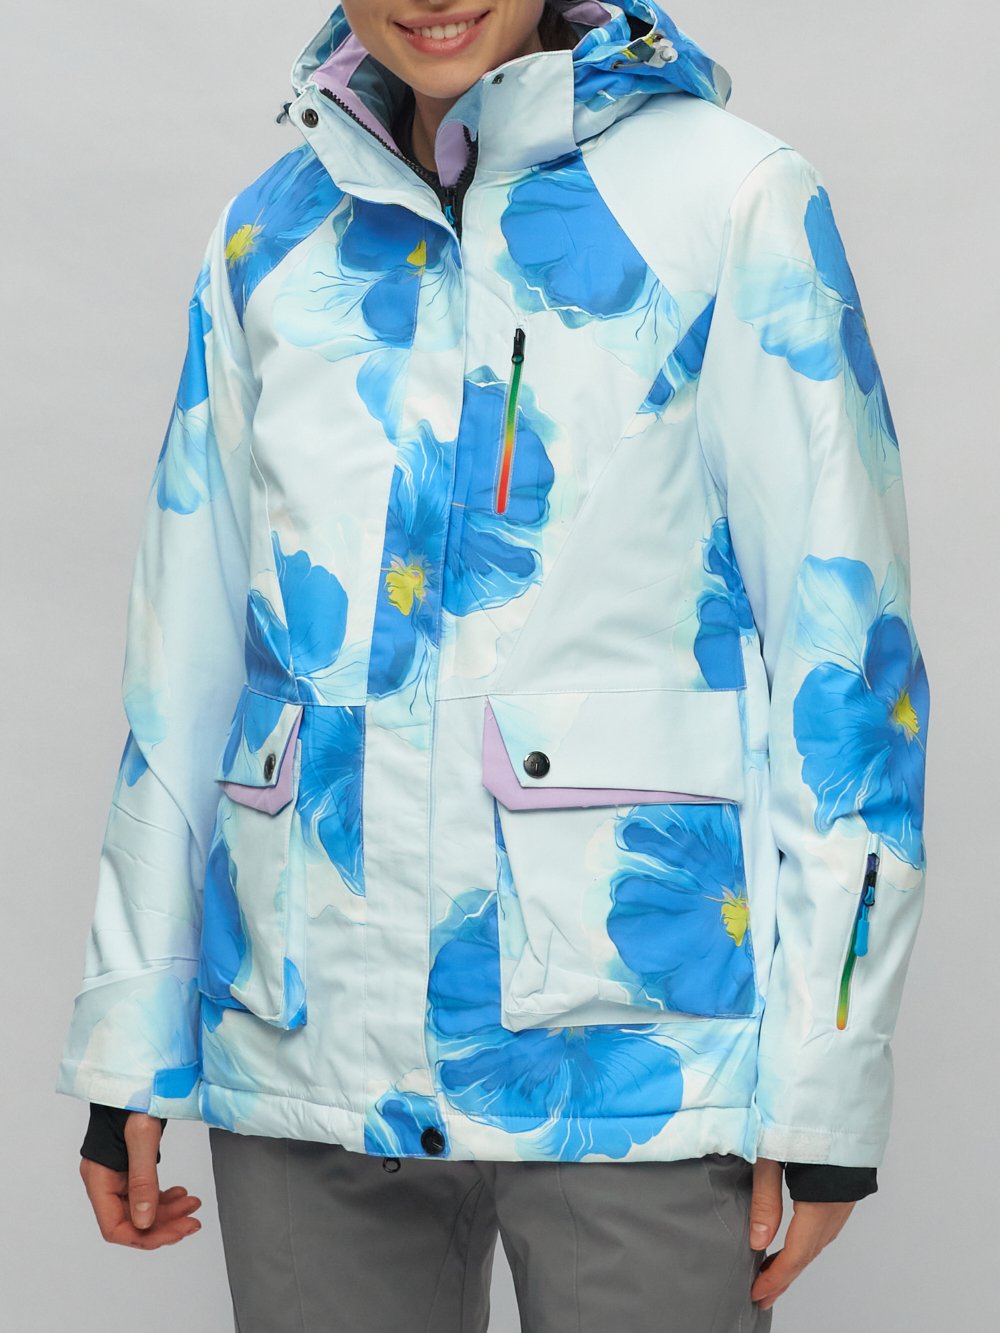 Купить горнолыжный костюм женский оптом от производителя недорого в Москве 020231Gl 1